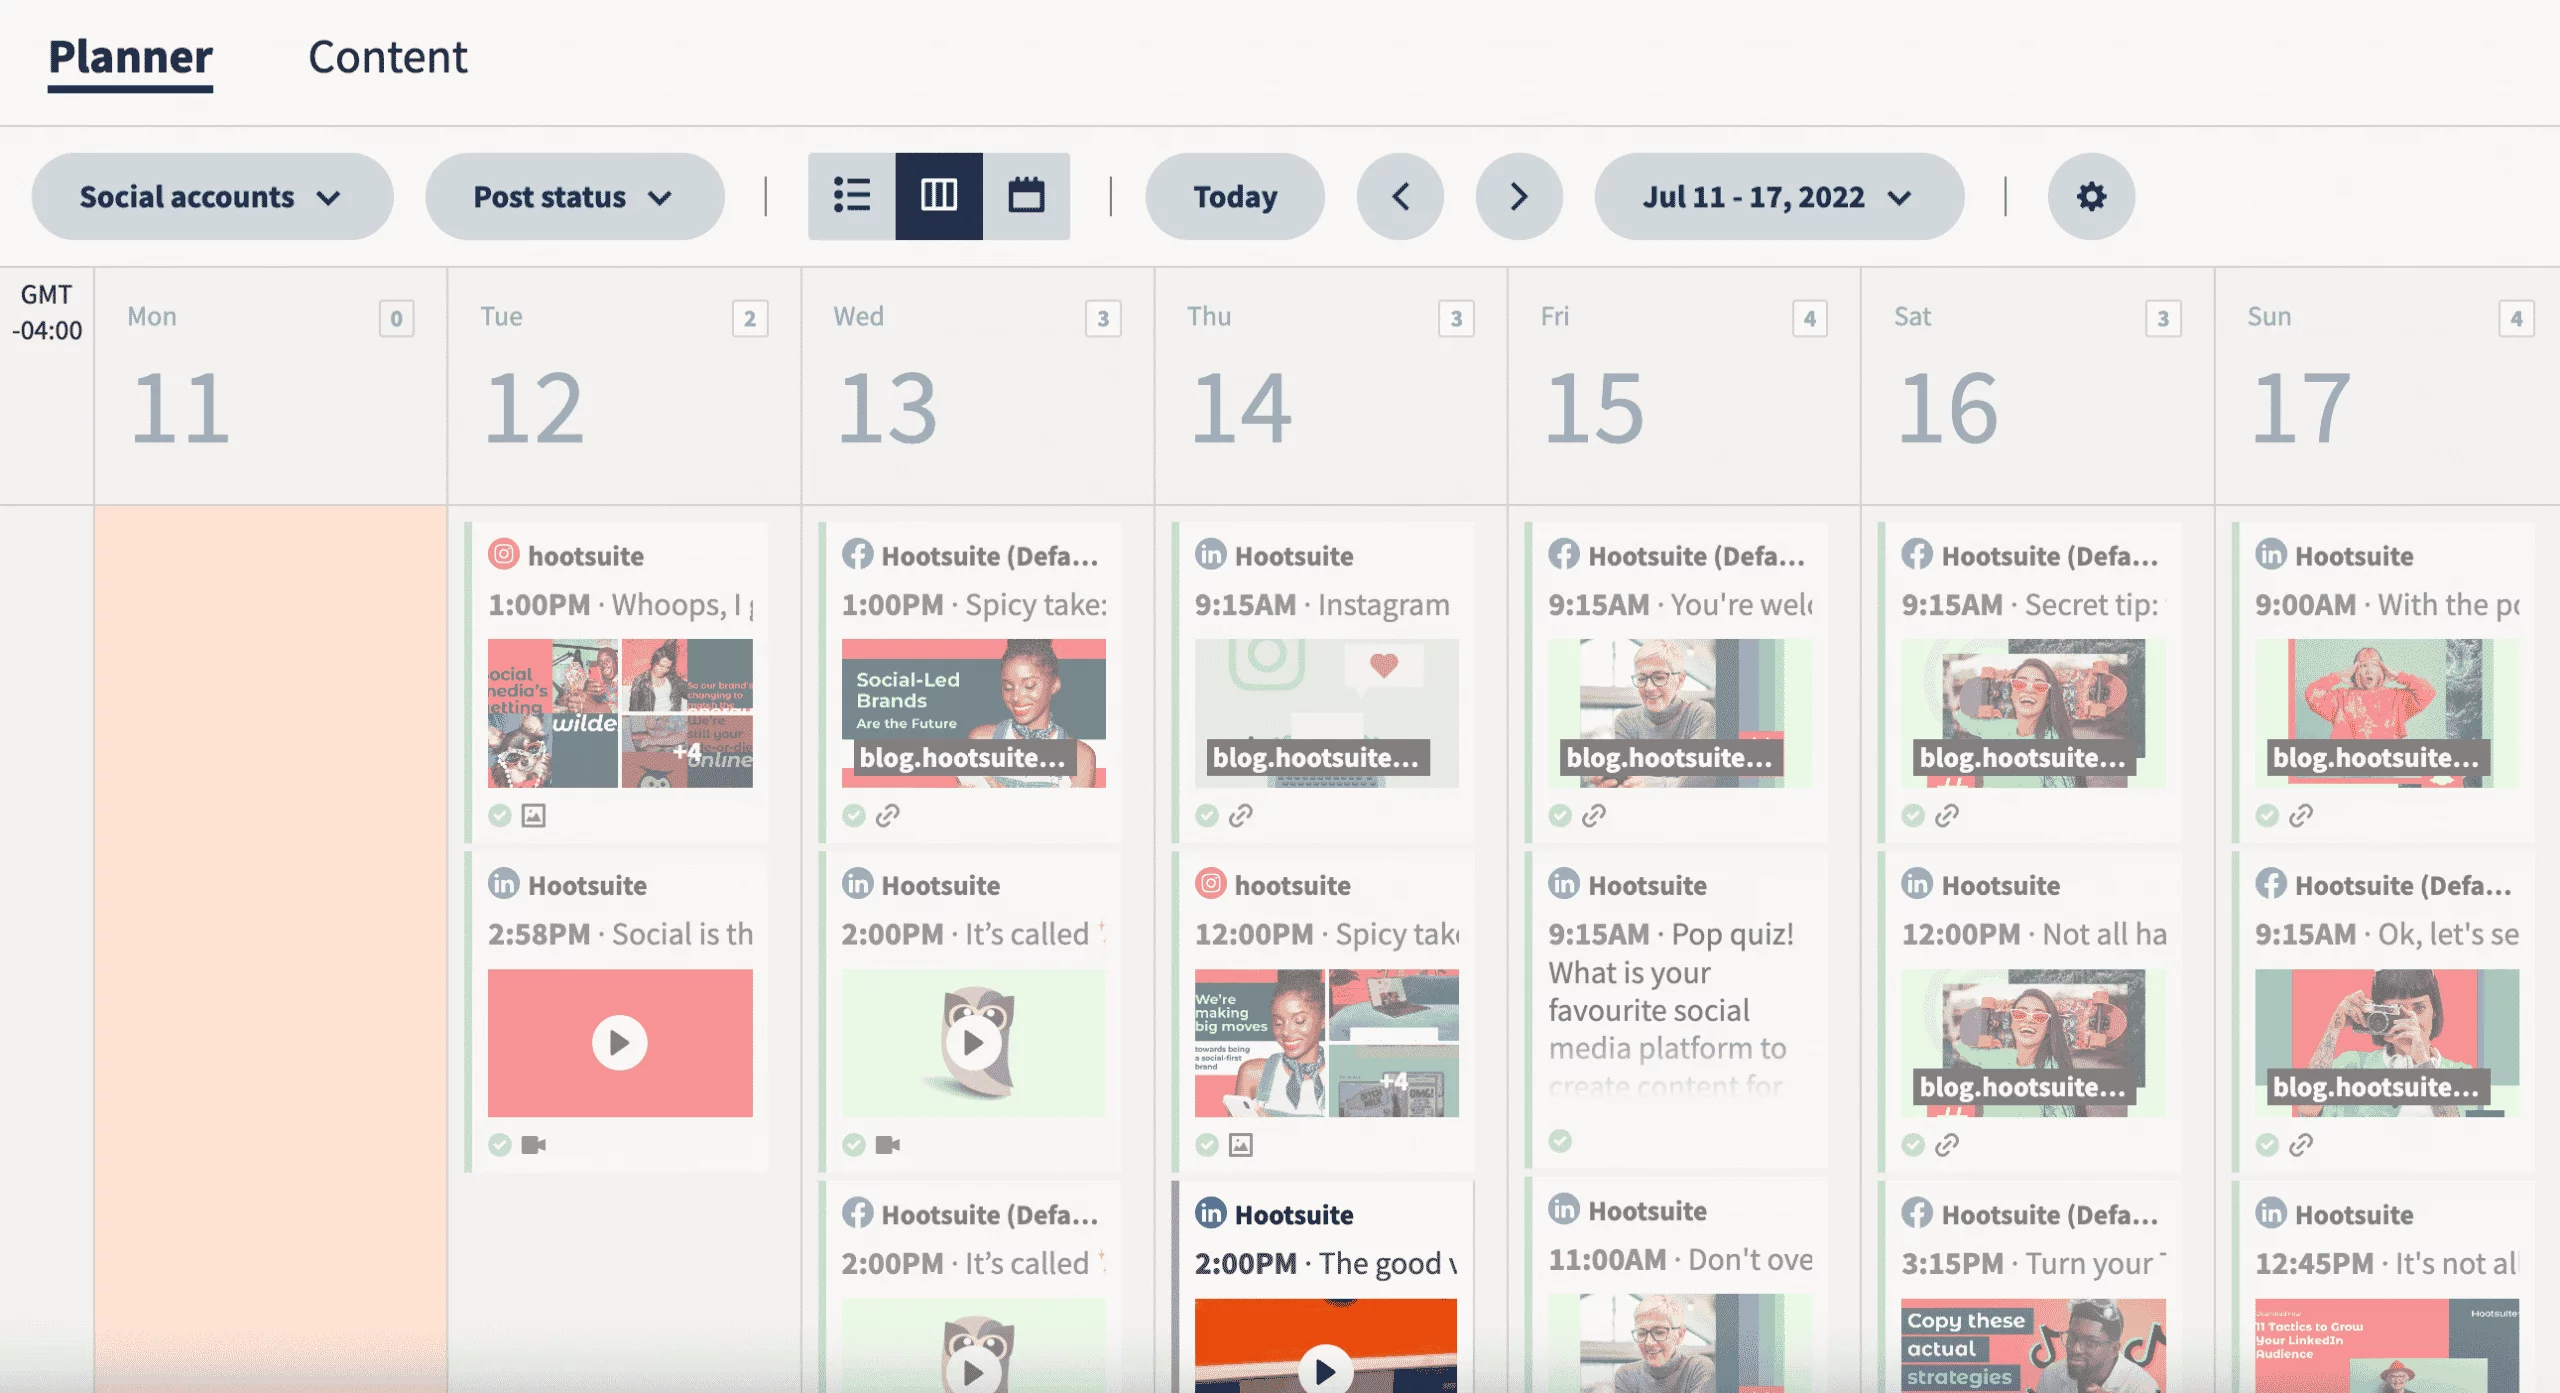 Hootsuite content planner calendar